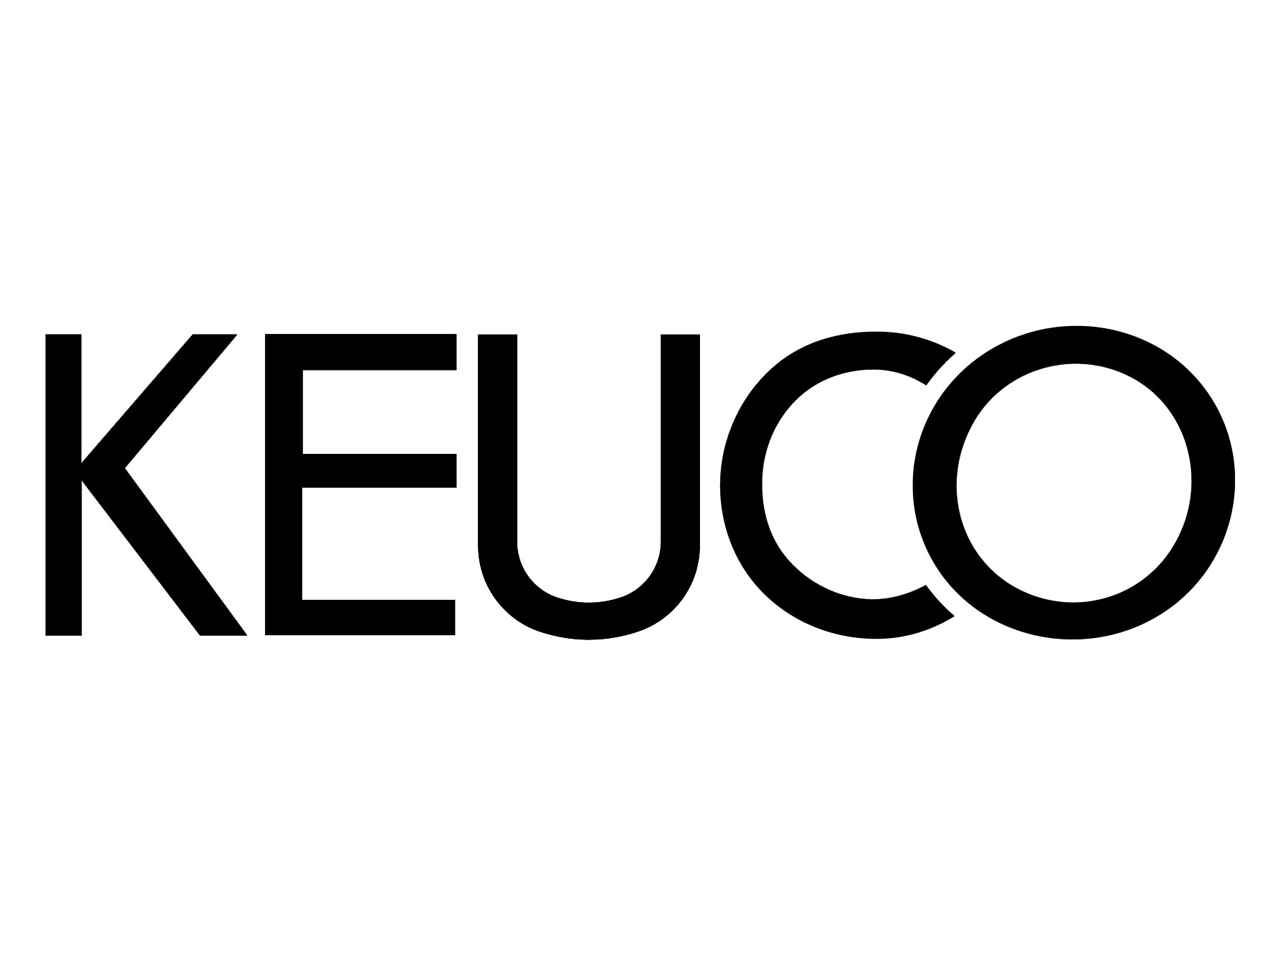 Logo KEUCO